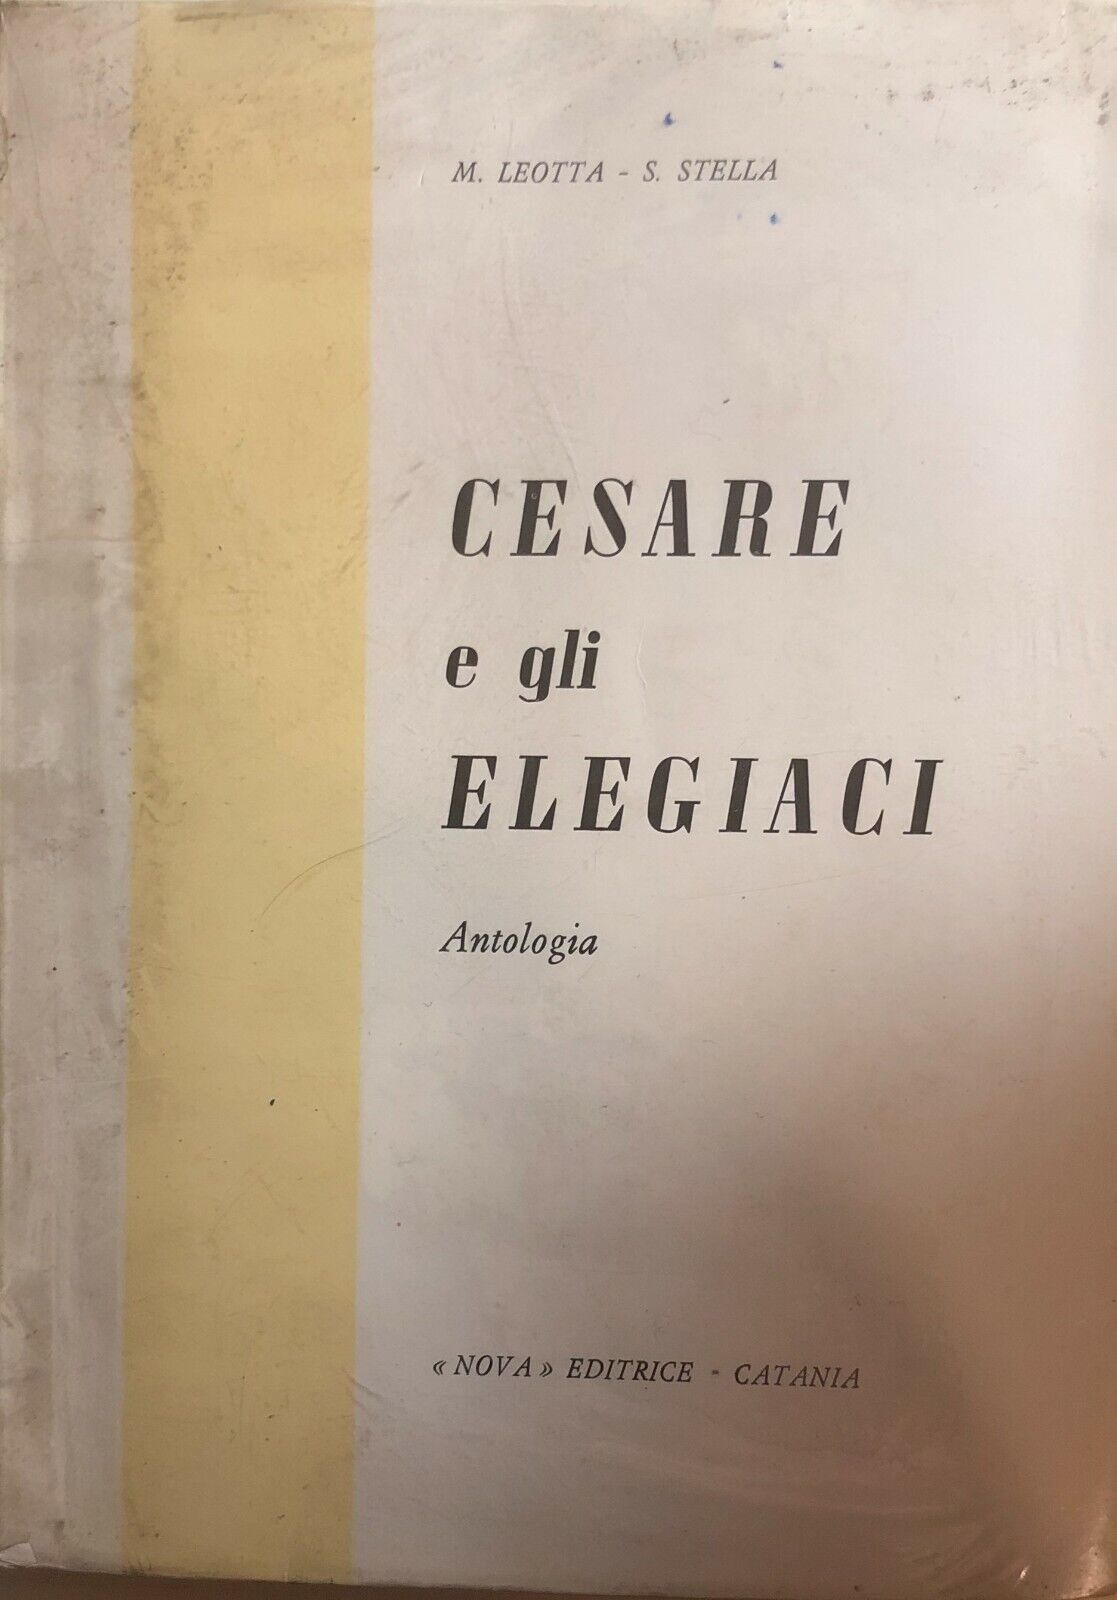 Cesare e gli elegiaci, Antologia di Aa.vv., 1971, Nova Editrice Catania